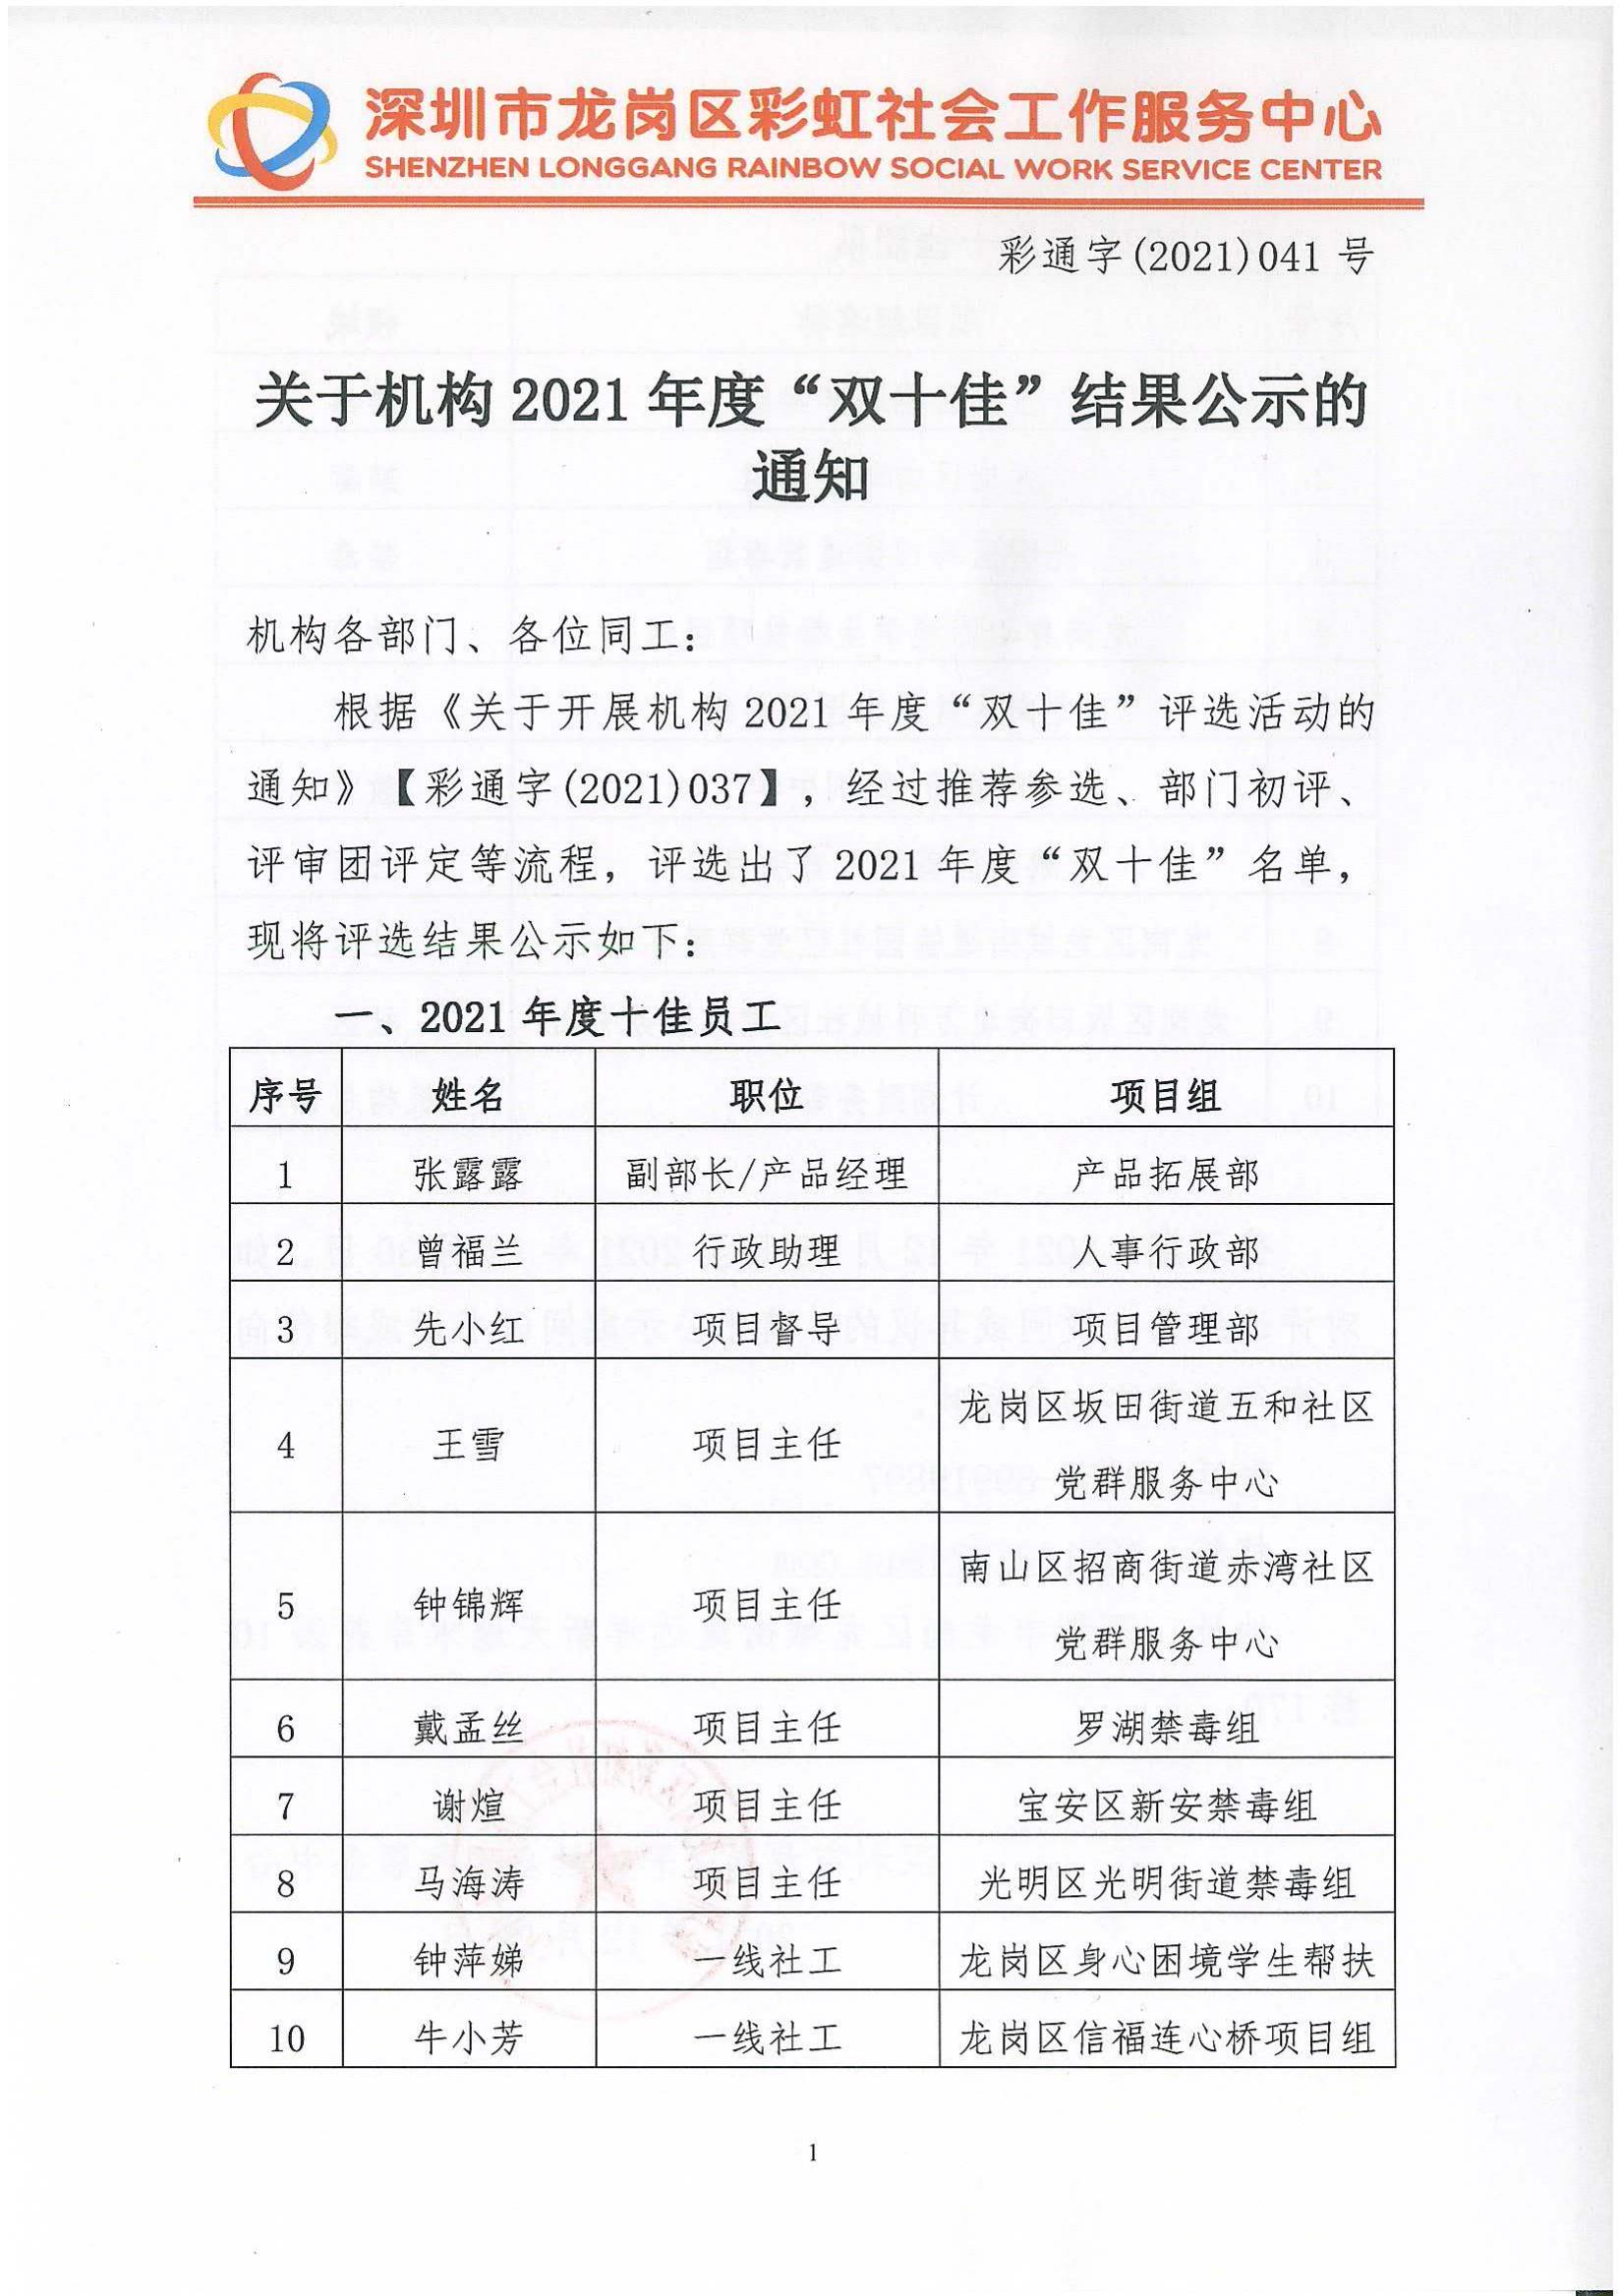 彩通字(2021)041-关于机构2021年度“双十佳”结果公示的通知(1)_00.jpg